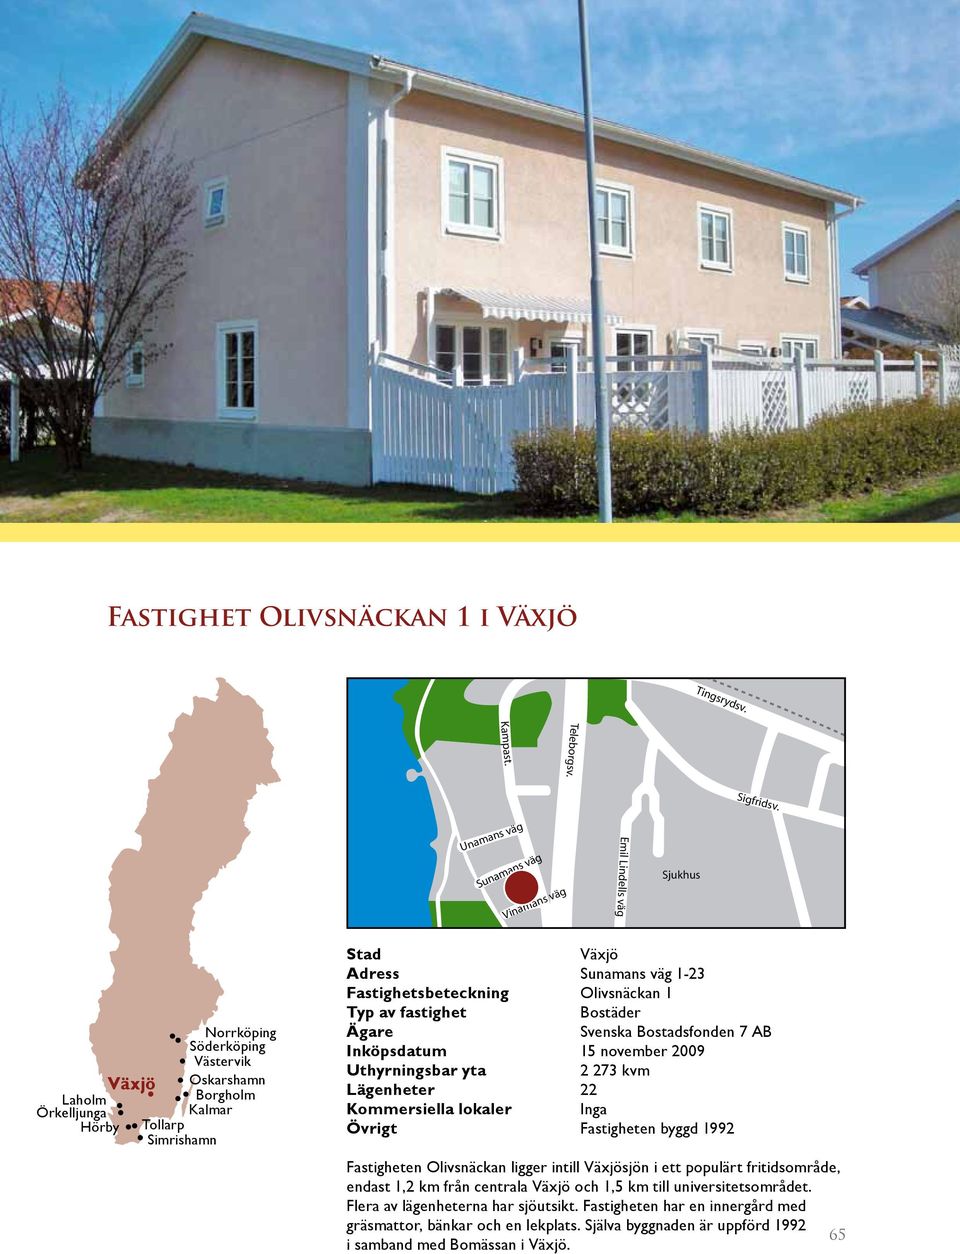 kvm Lägenheter 22 Kommersiella lokaler Inga Övrigt Fastigheten byggd 1992 Fastigheten Olivsnäckan ligger intill Växjösjön i ett populärt fritidsområde, endast 1,2 km